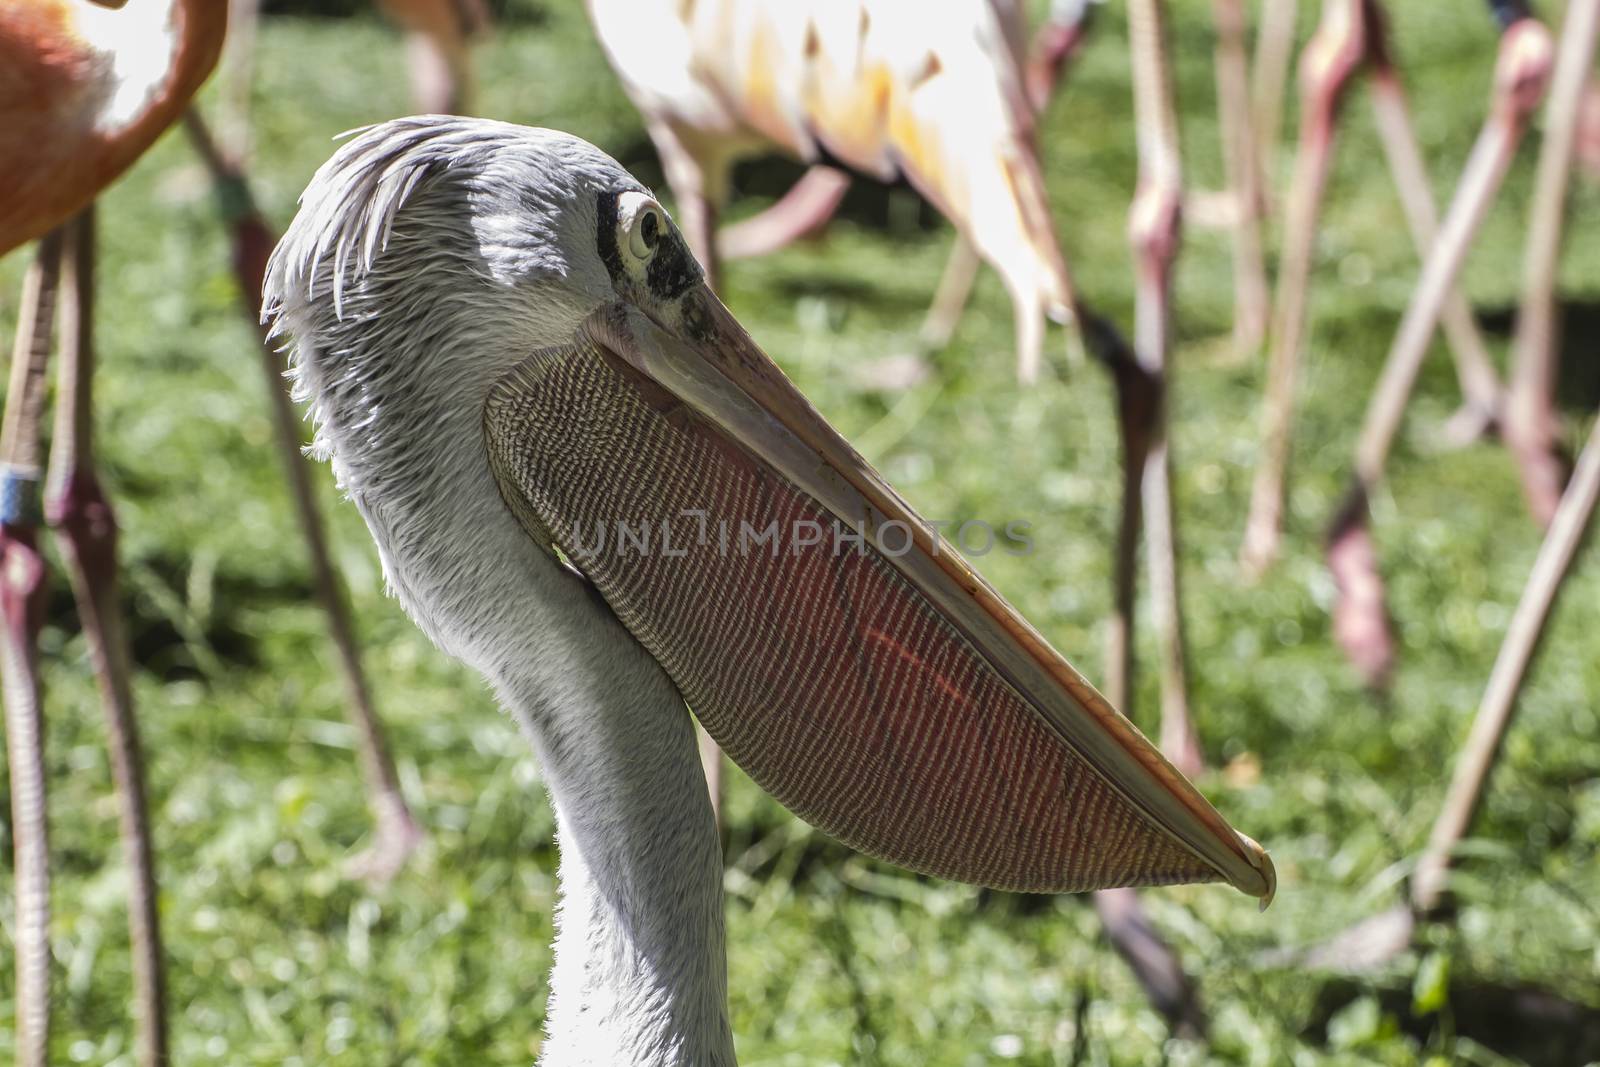 wildlife pelican, bird with huge beak by FernandoCortes